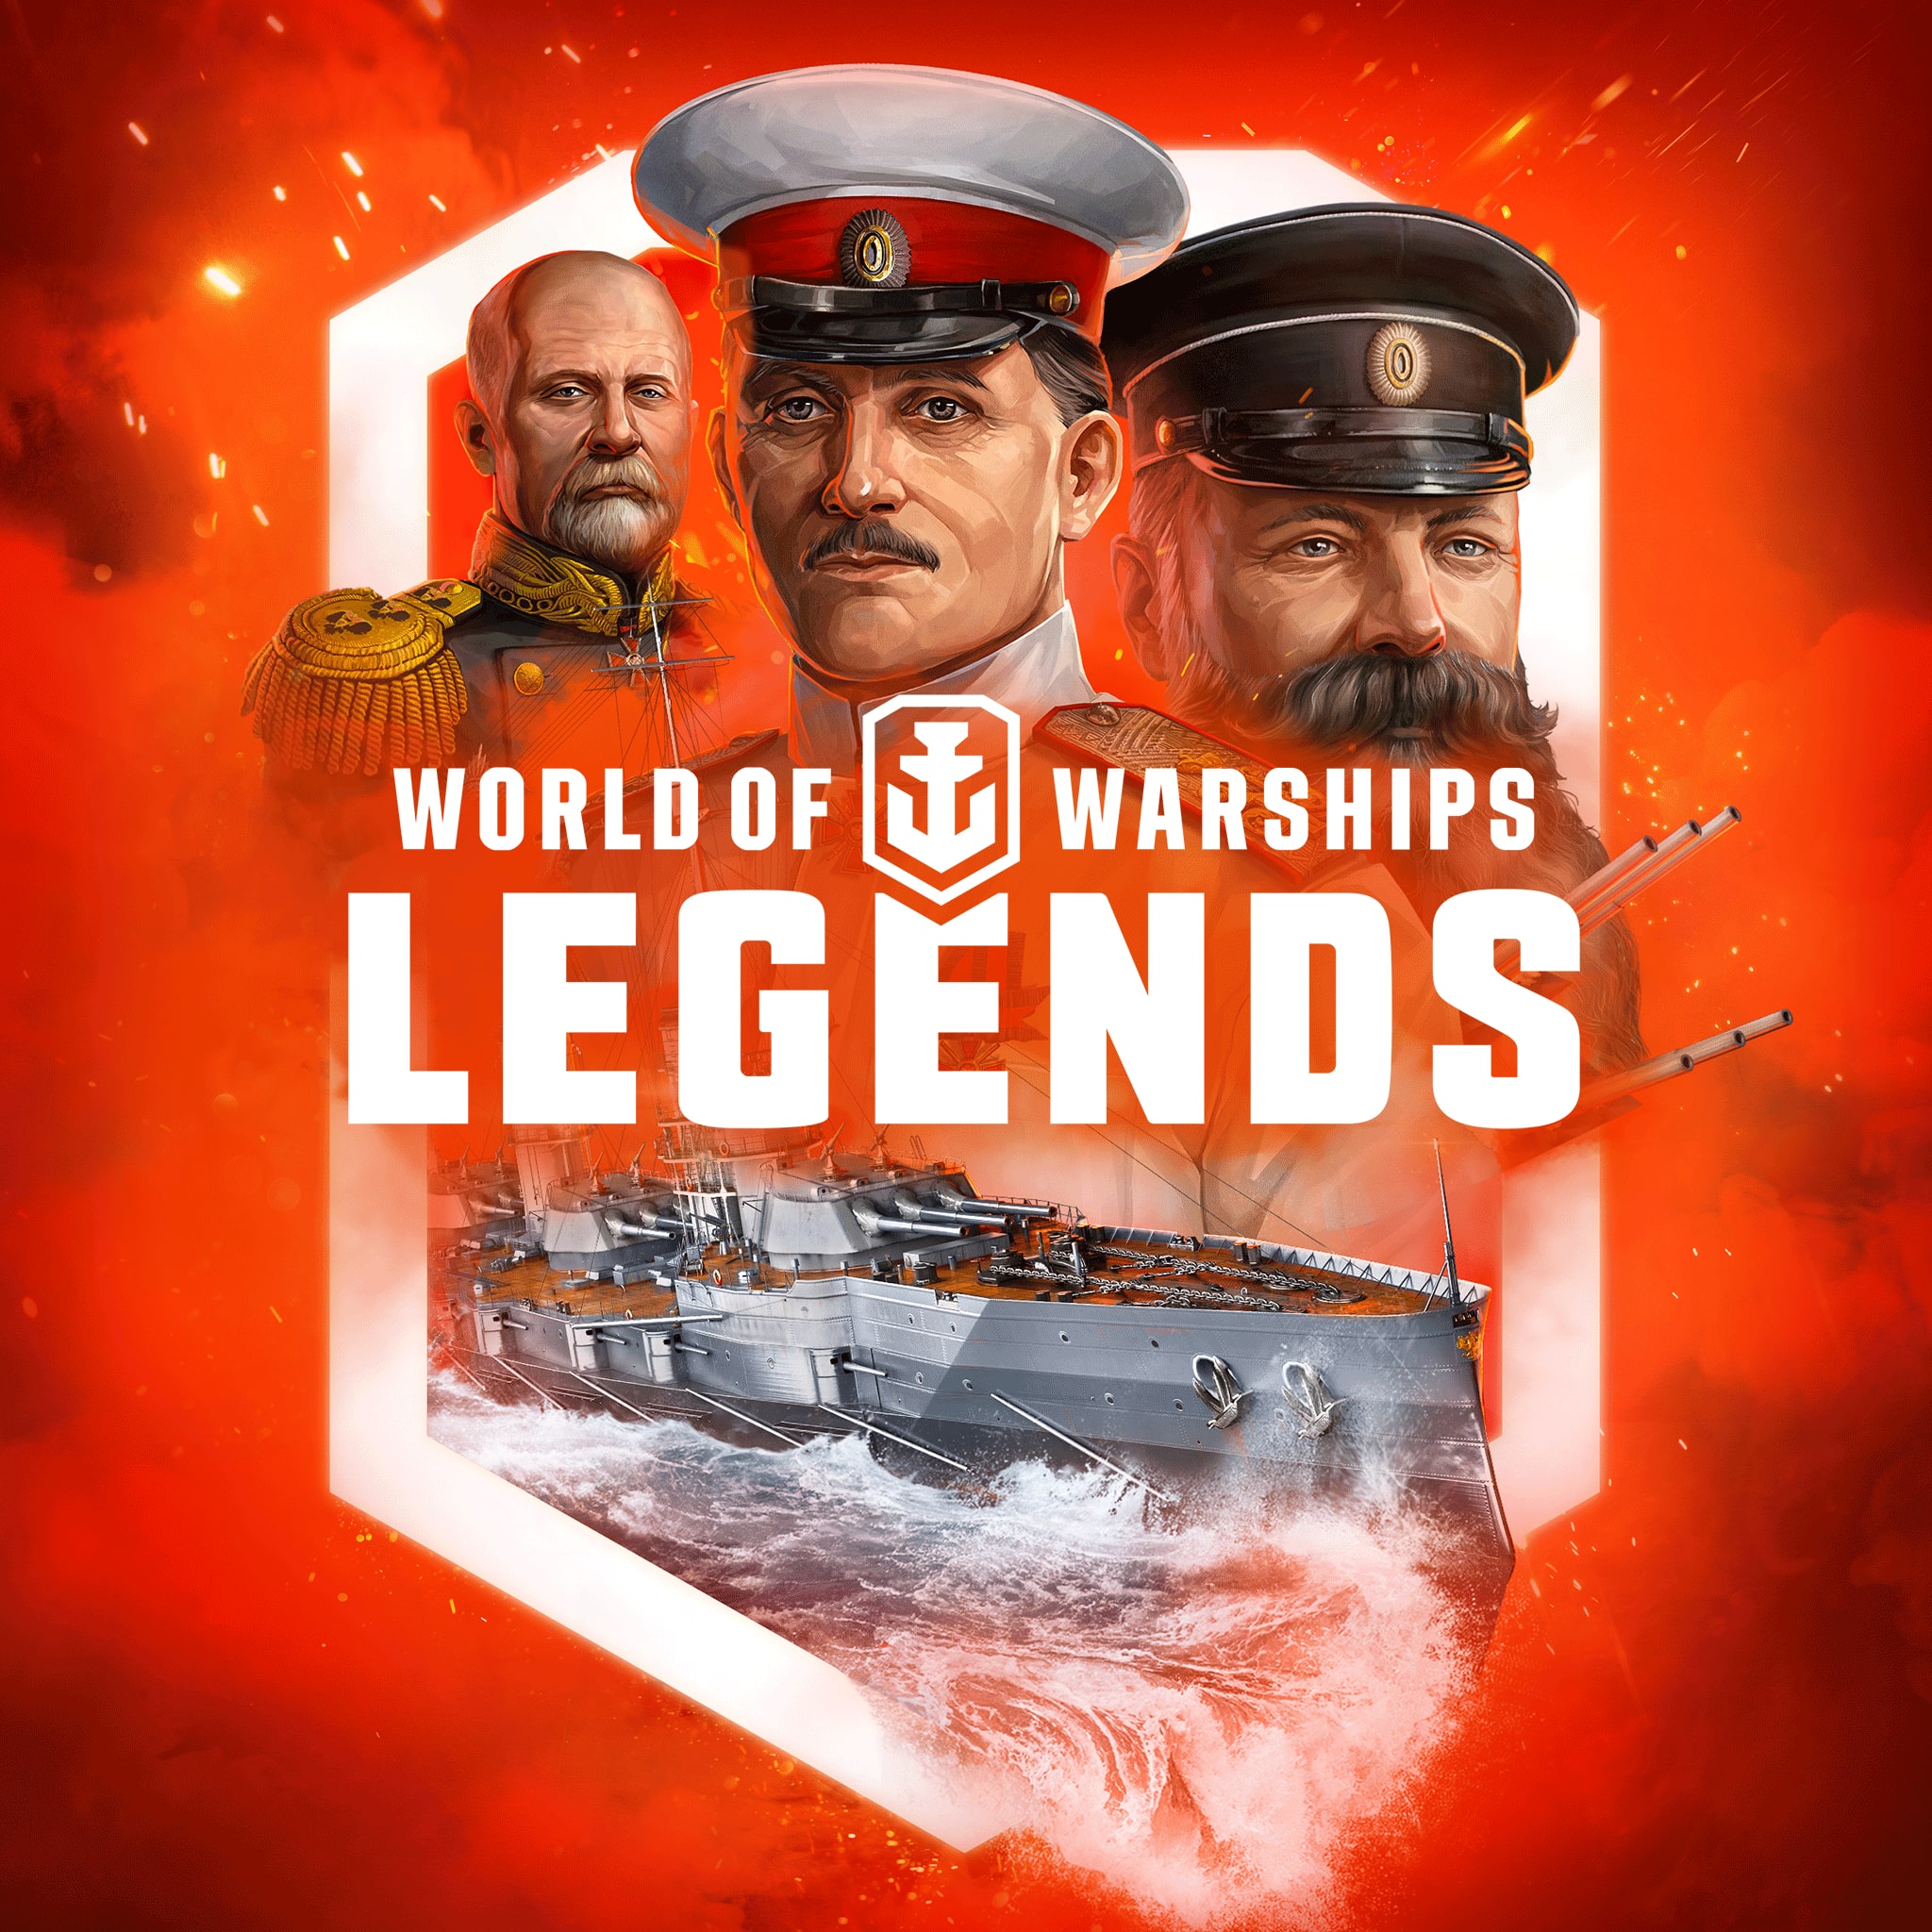 World of Warships: Legends— PS4 Venäläinen tsaari